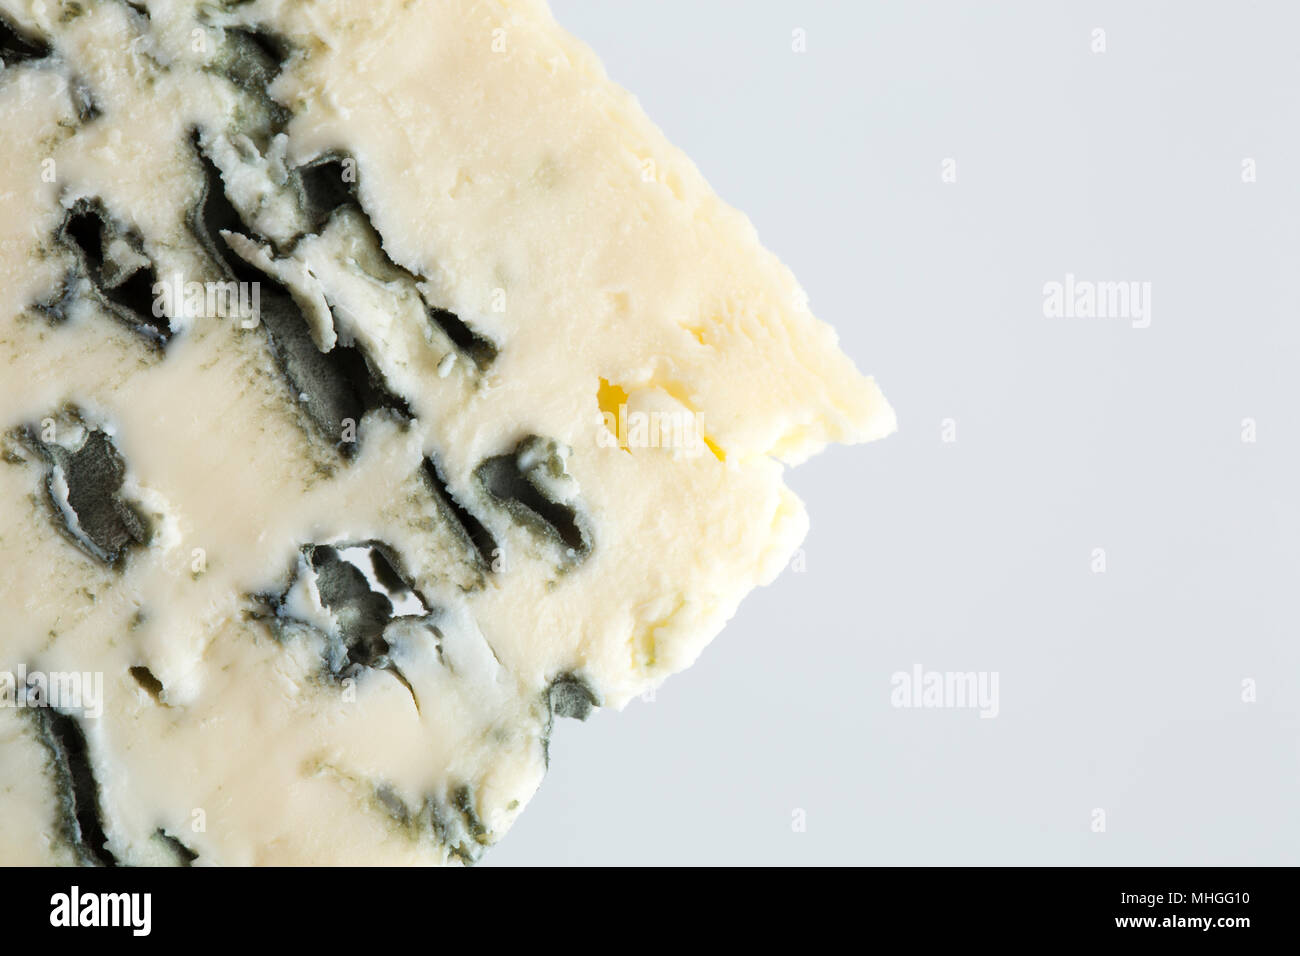 Il francese Saint Agur formaggi acquistati da un supermercato nel Regno Unito. Saint Agur è un blu formaggio di latte di mucca che proviene dalla regione di Auvergne di F Foto Stock